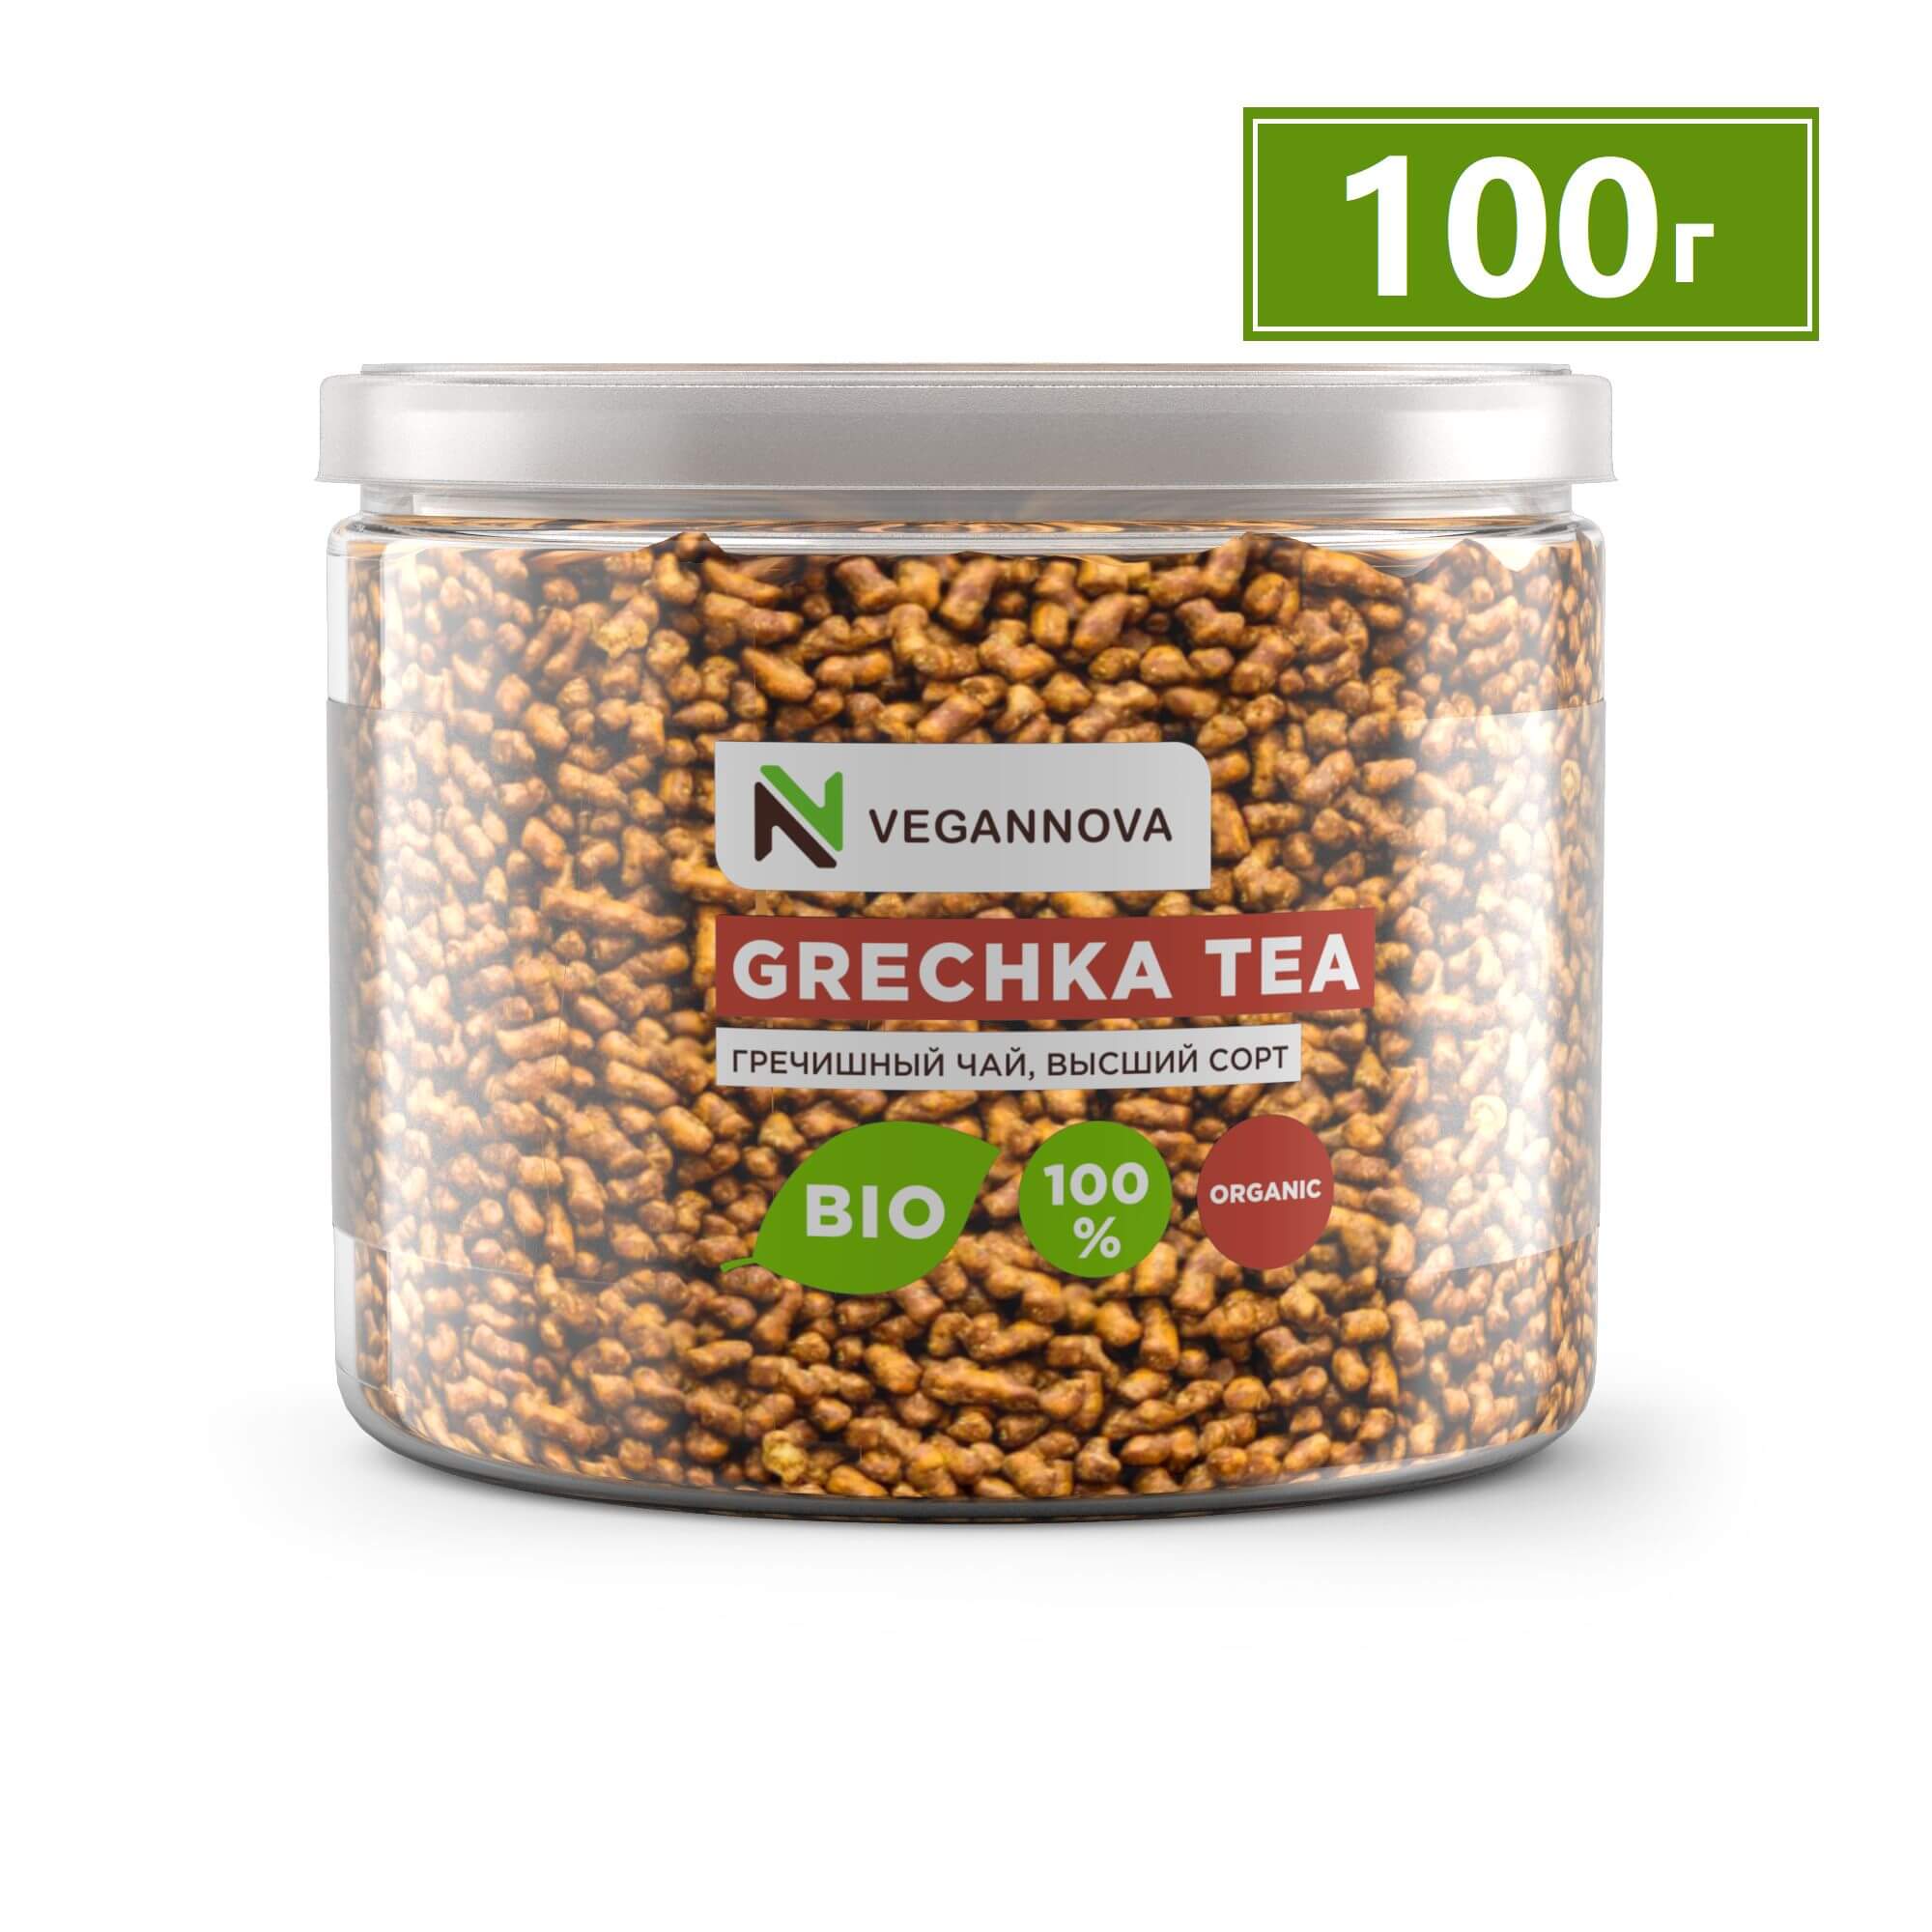 VeganNova Гречишный Чай (ку цяо), без кофеина, суперфуд для красоты и здоровья, гранулированный, 100 г